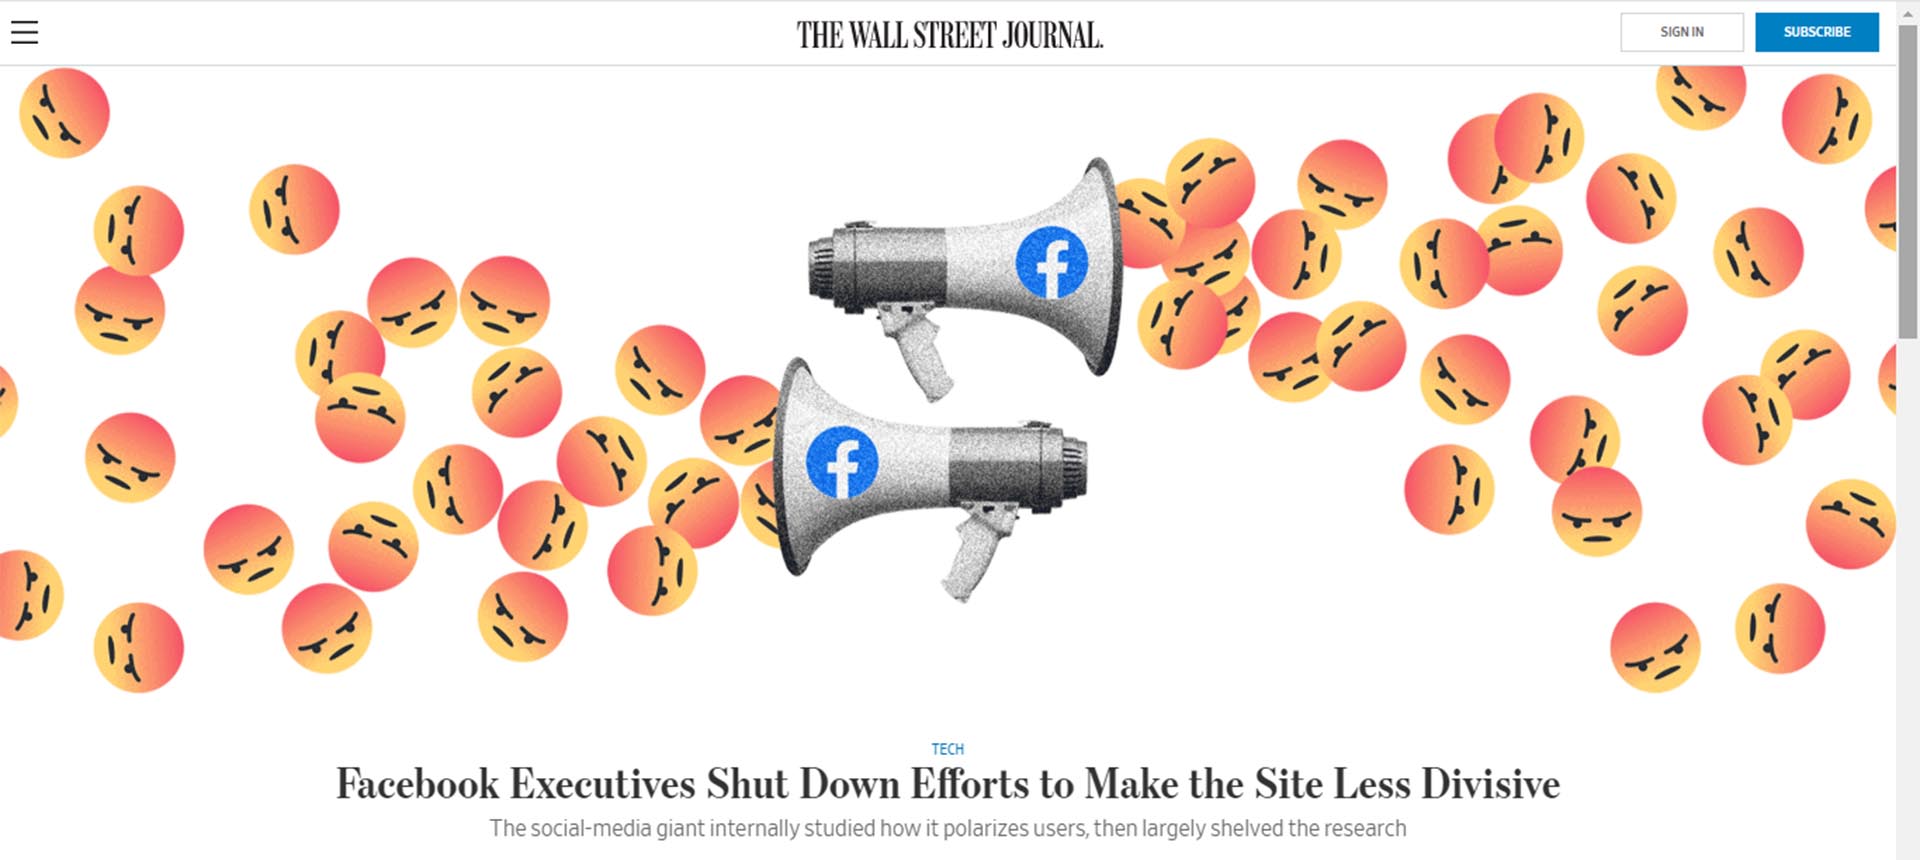 "Los ejecutivos de Facebook aplacan los esfuerzos para que el sitio sea menos divisivo", The Wall Street Journal